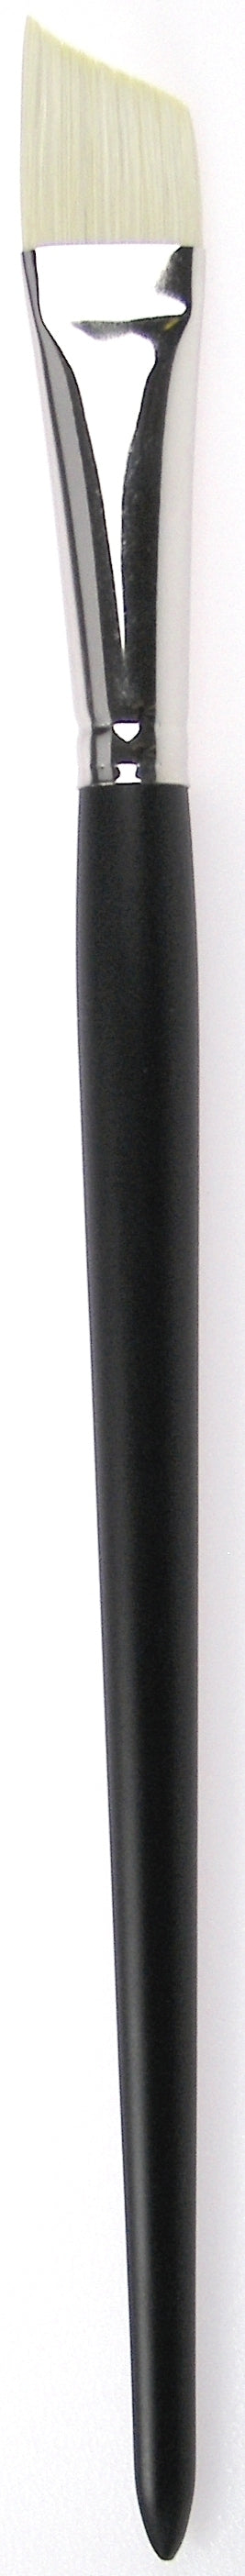 Zahn Oil-Acrylic Brush Angular, Brislon, 9958 Size 8